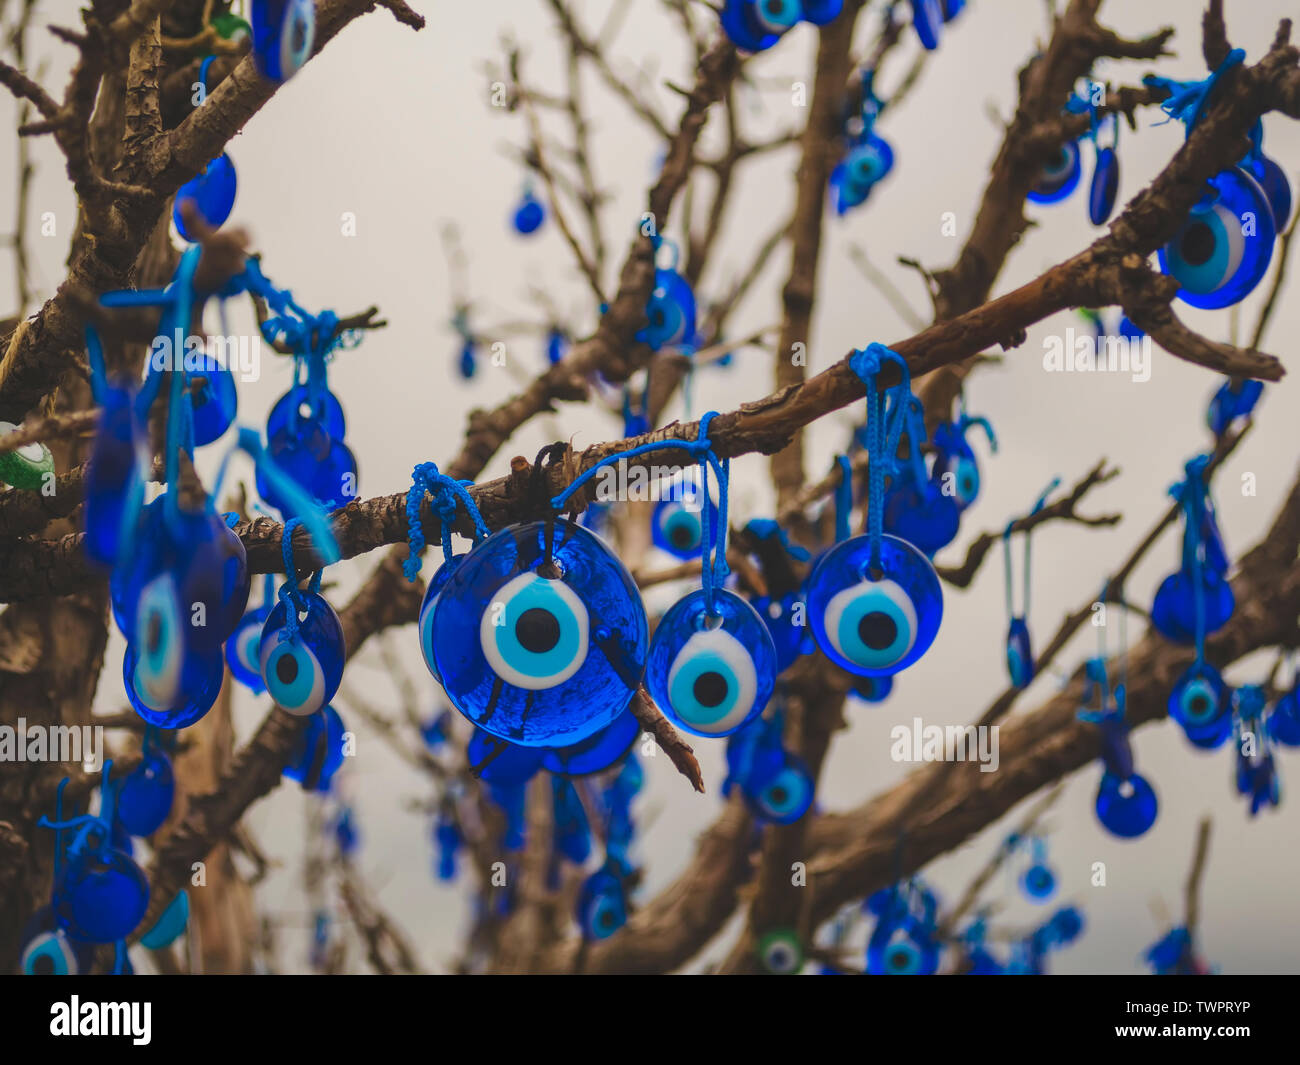 Viele traditionelle türkische Amulette - Nazar Boncuk auf sich hat oder  Fatima Auge auf die Zweige eines Baumes hängen möchte Stockfotografie -  Alamy